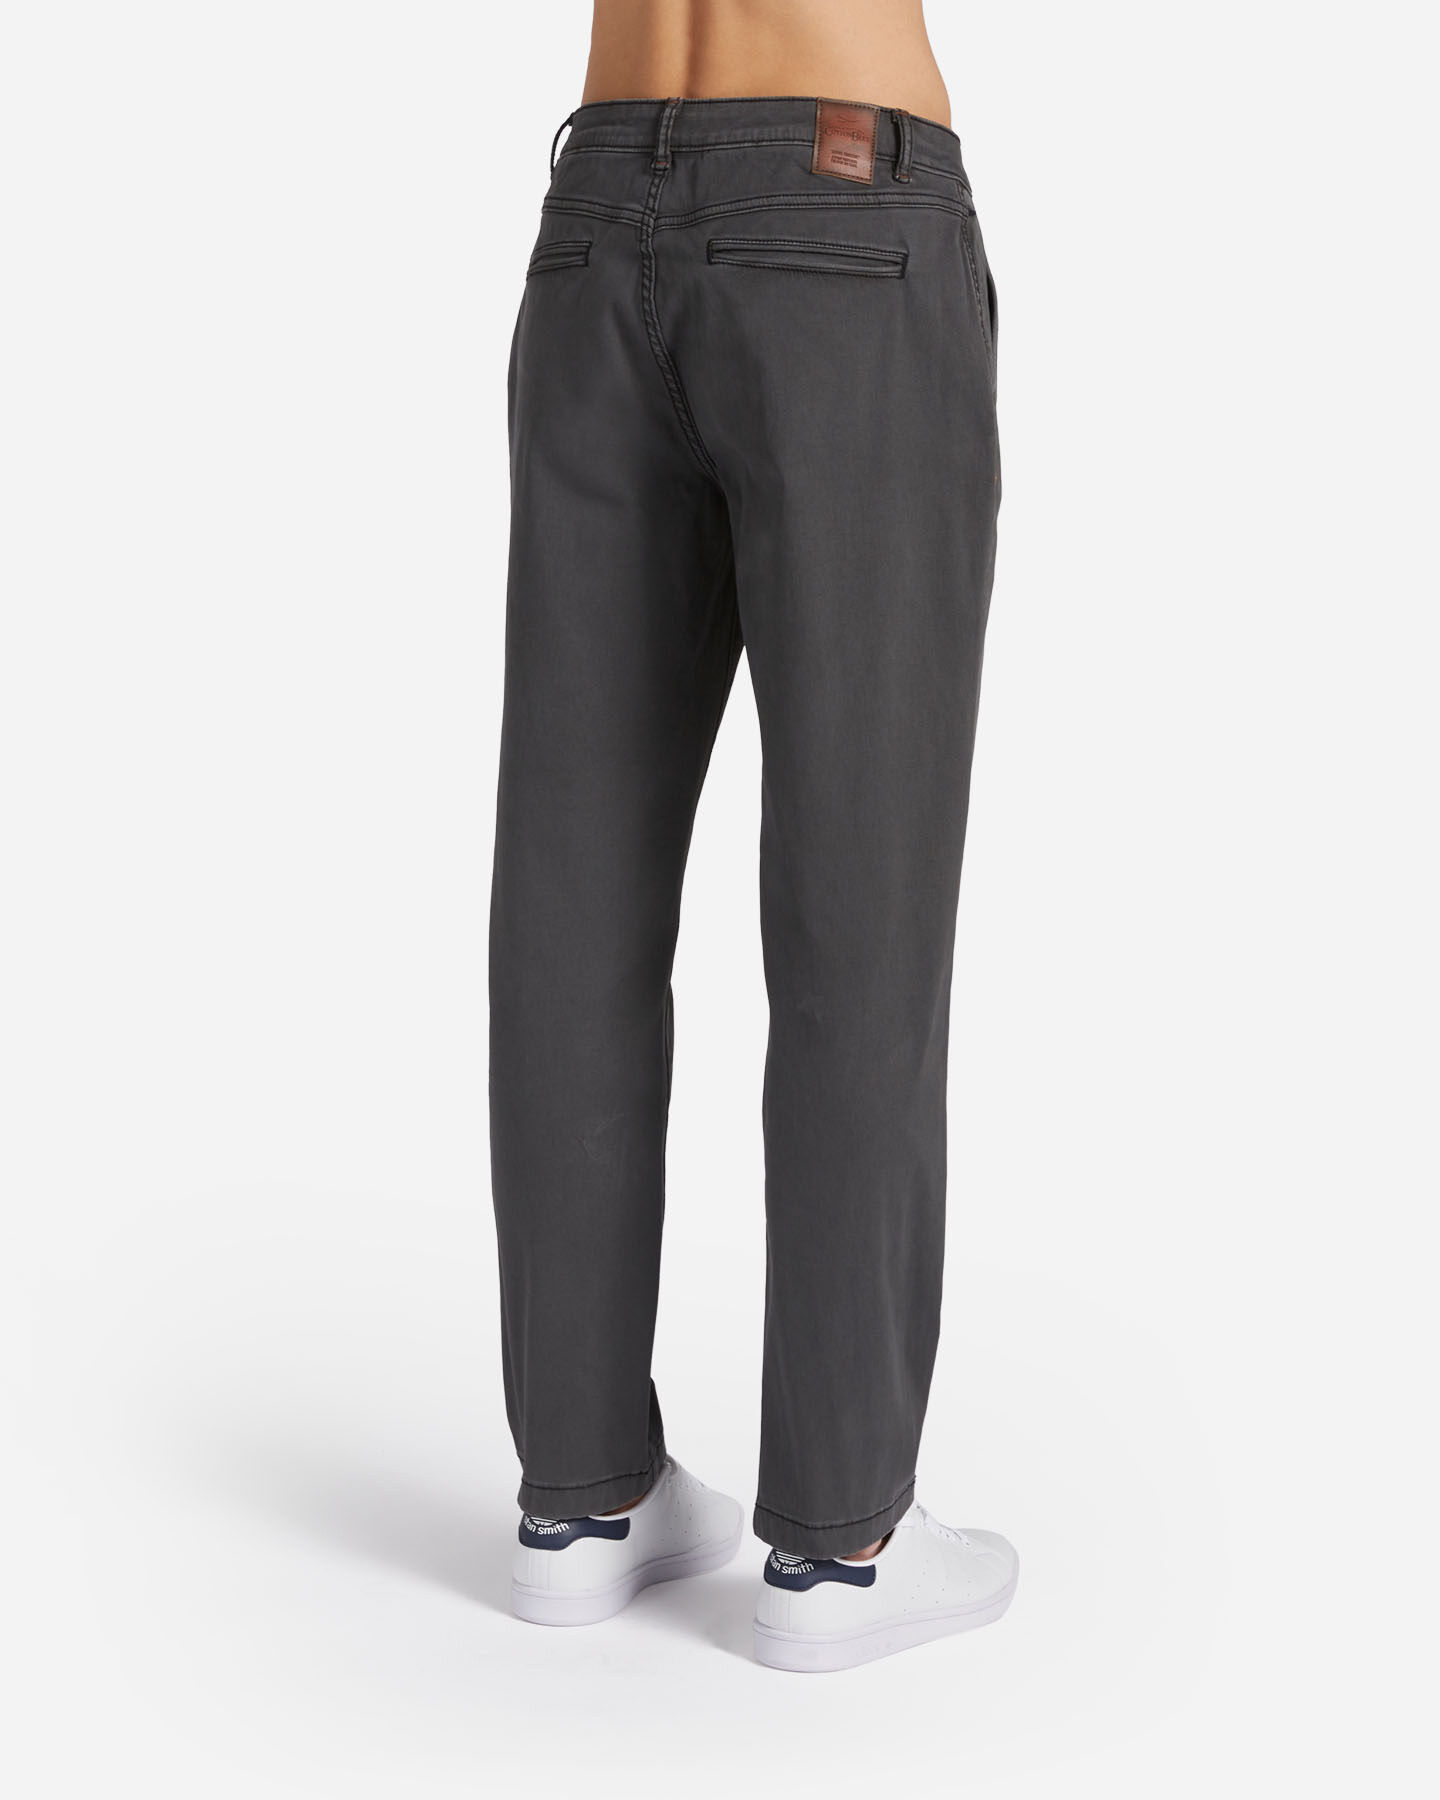  Pantalone COTTON BELT CHINO HYBRID M S4127004|910|30 scatto 1